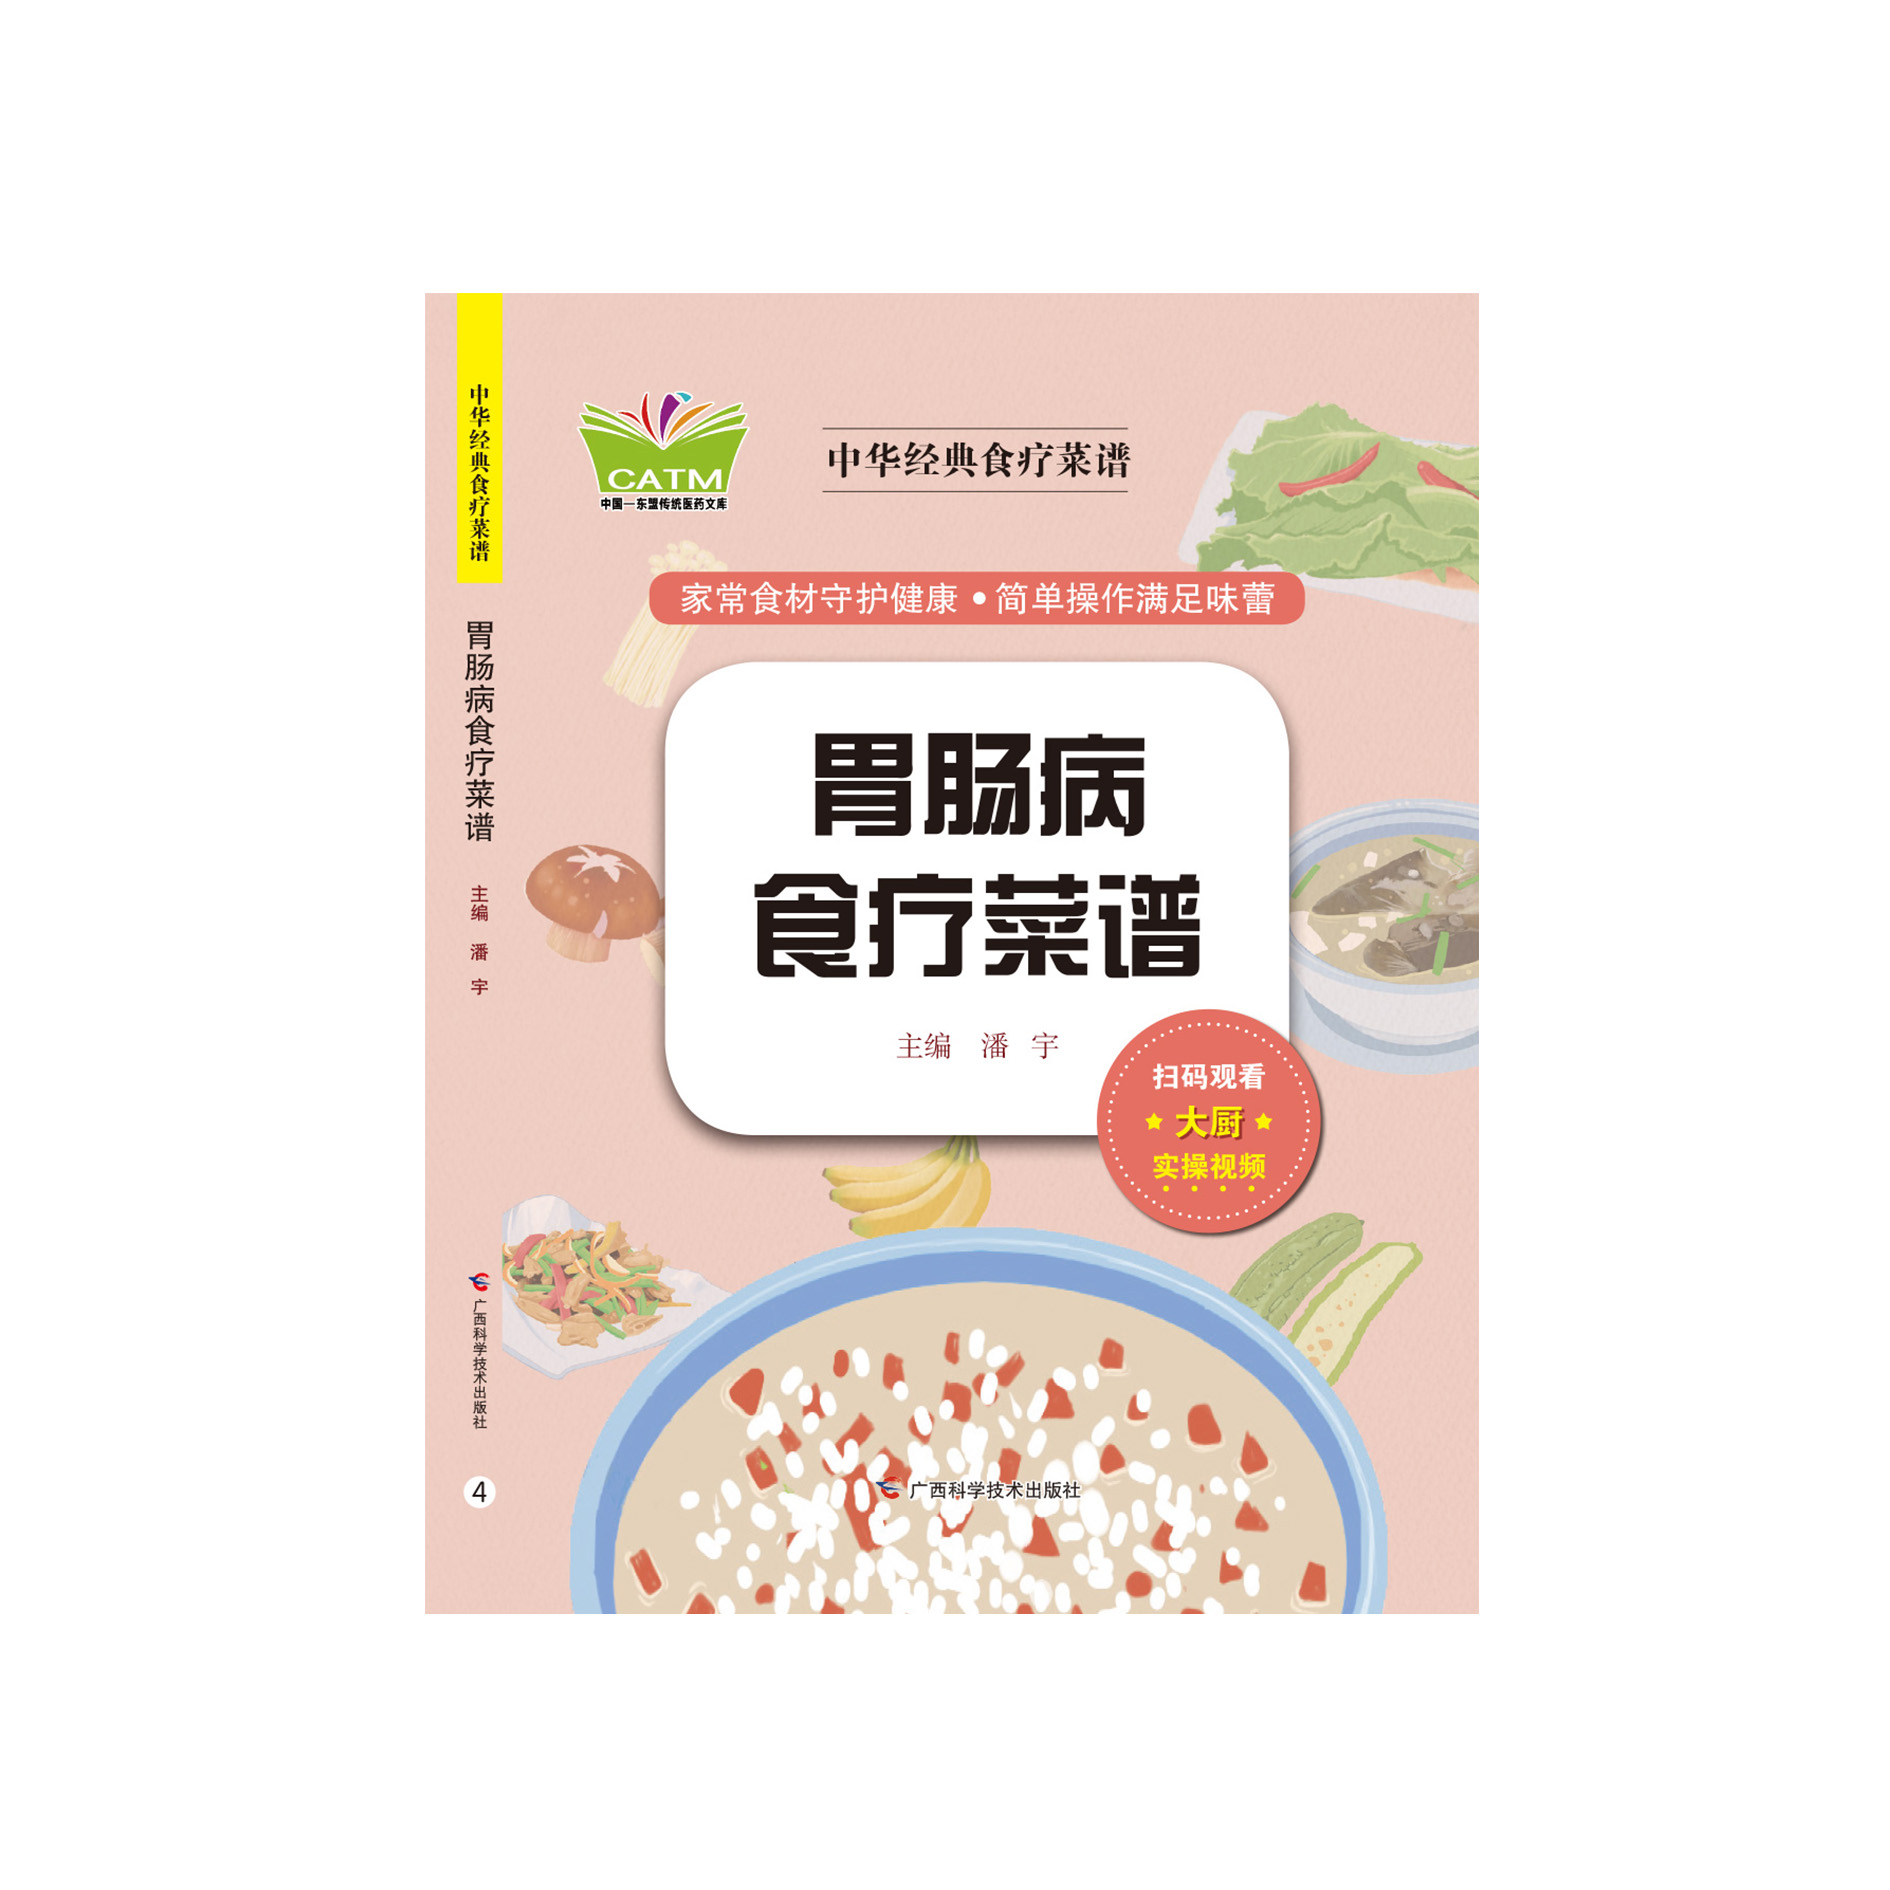 เมนูอาหารจีนเพื่อสุขภาพ สูตรต้นตำรับ •สูตรอาหารรักษาโรคกระเพาะอาหารและลำไส้